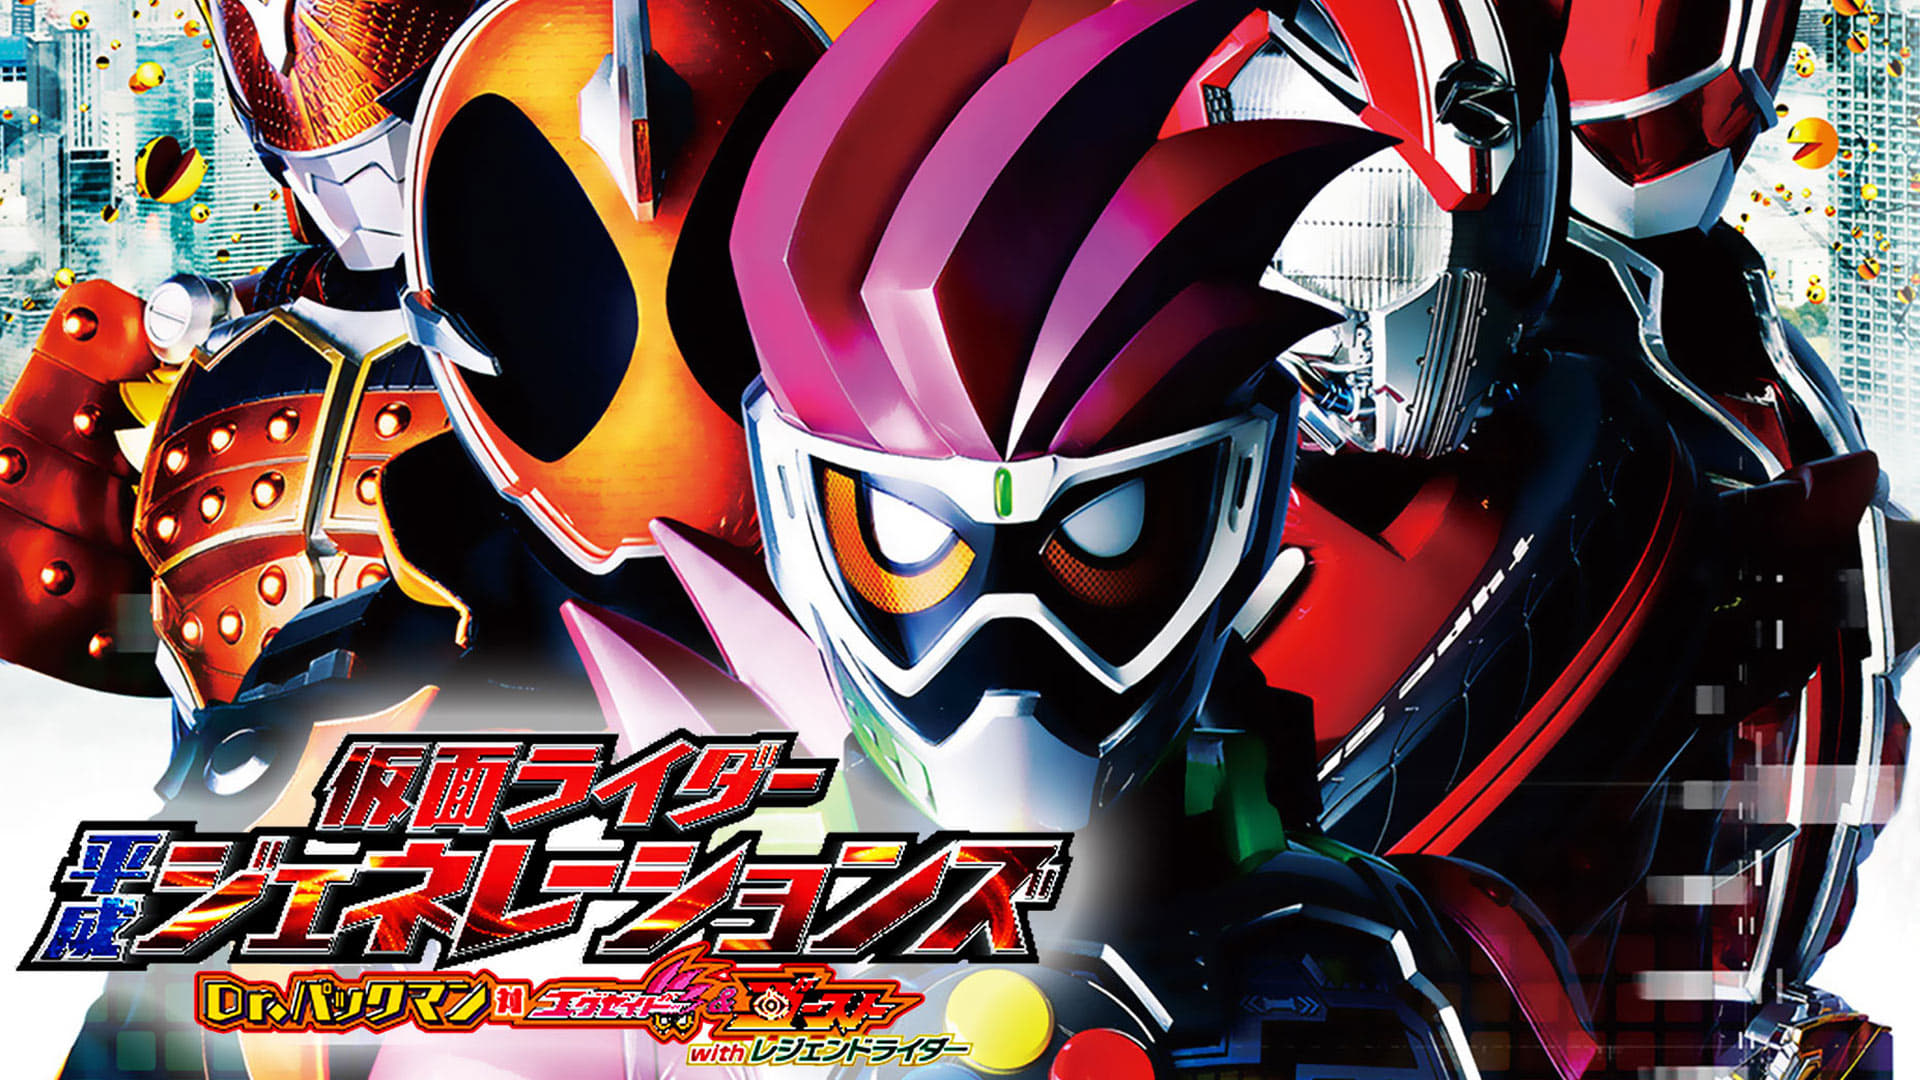 Kamen Rider Bình Thành Thế Hệ: Tiến Sĩ Pac-Man Vs Ex-Aid Và Ghost Cùng Các Rider Huyền Thoại